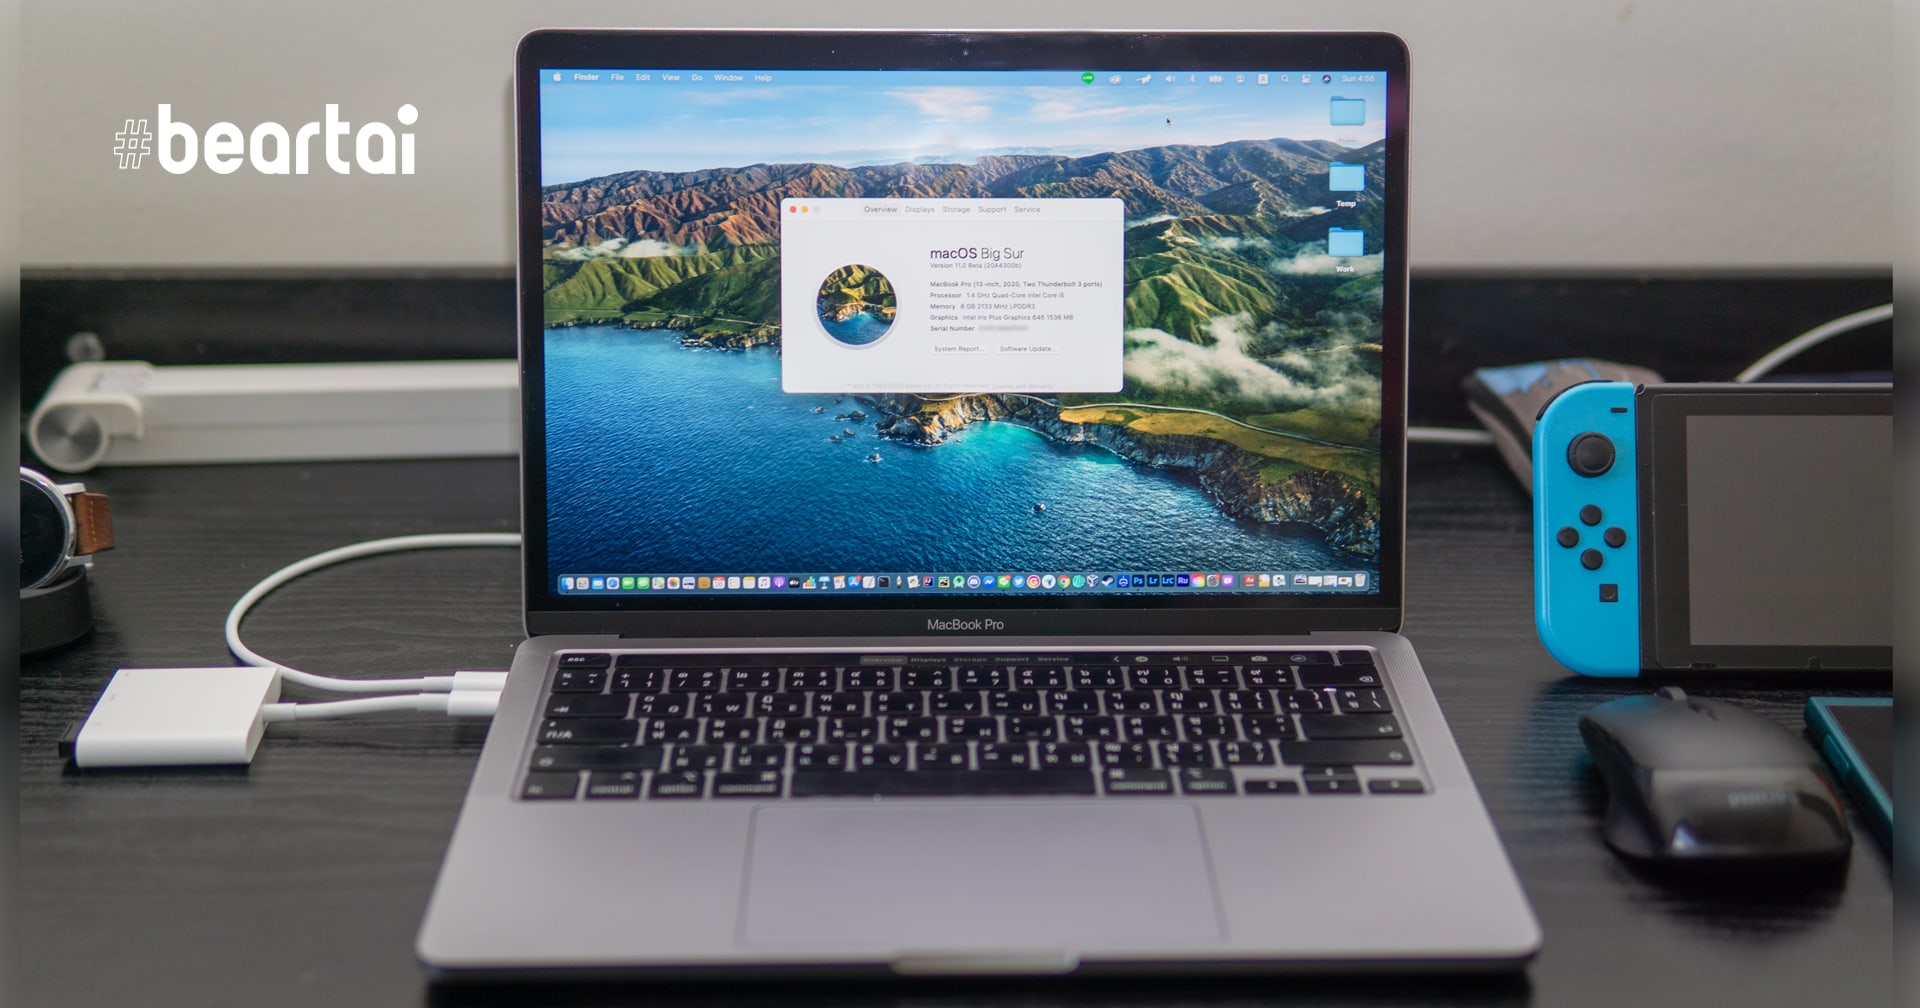 (ลองของจริง) macOS Big Sur Beta ก้าวสู่ยุคใหม่ของระบบปฏิบัติการ Apple หนึ่งใน OS ที่สวยงามที่สุด